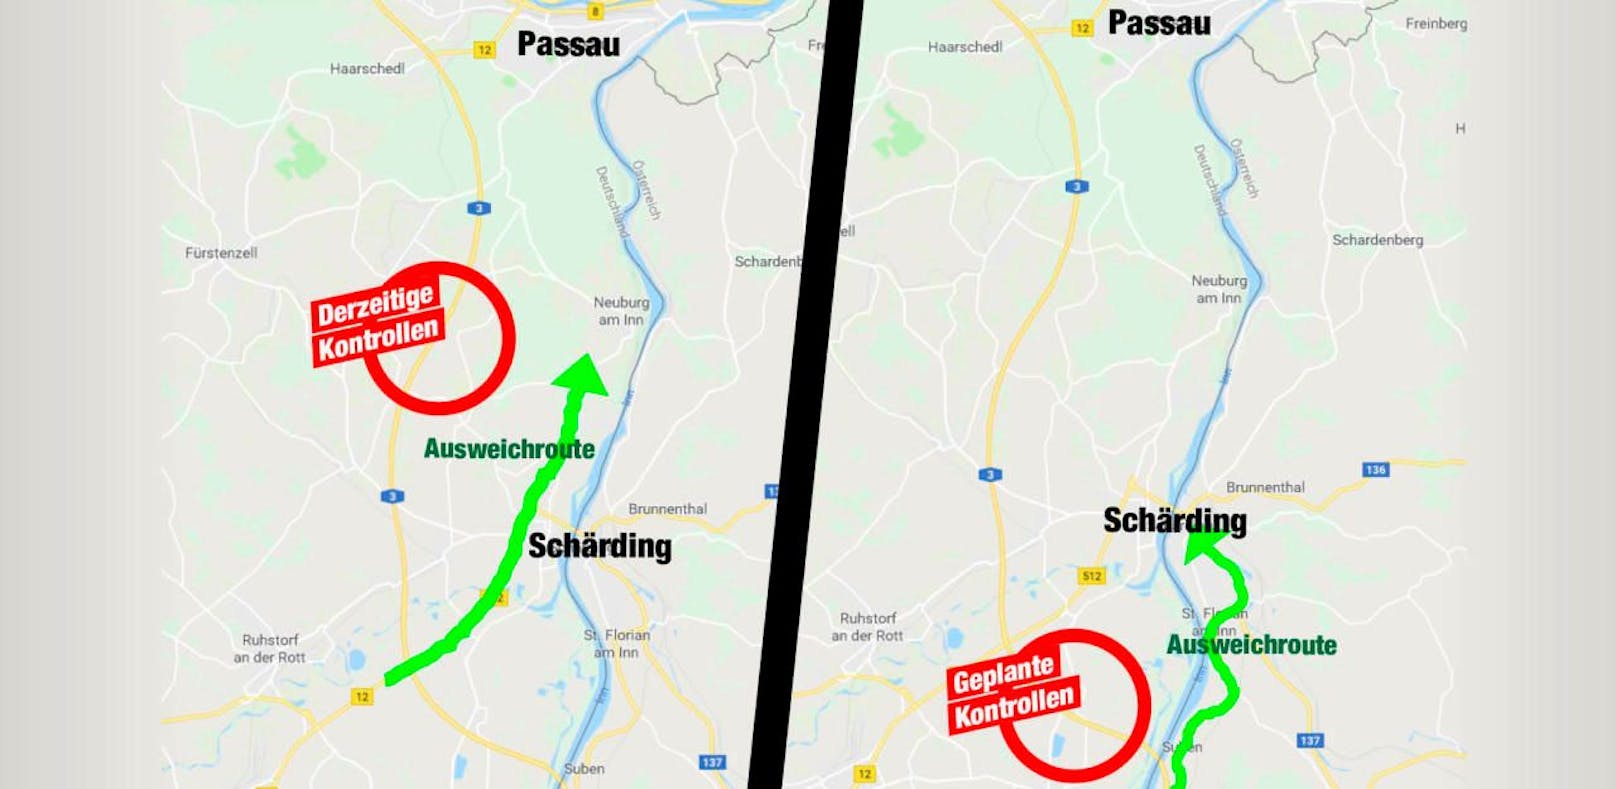 Derzeit sorgen die Kontrollen auf der A3 in Deutschland für lange Wartezeiten. Diese Kontrollen könnten nun nach Süden, näher an die Grenze zu Österreich verlegt werden. Der Ausweichverkehr könnte dann über Schärding nach Passau gehen.